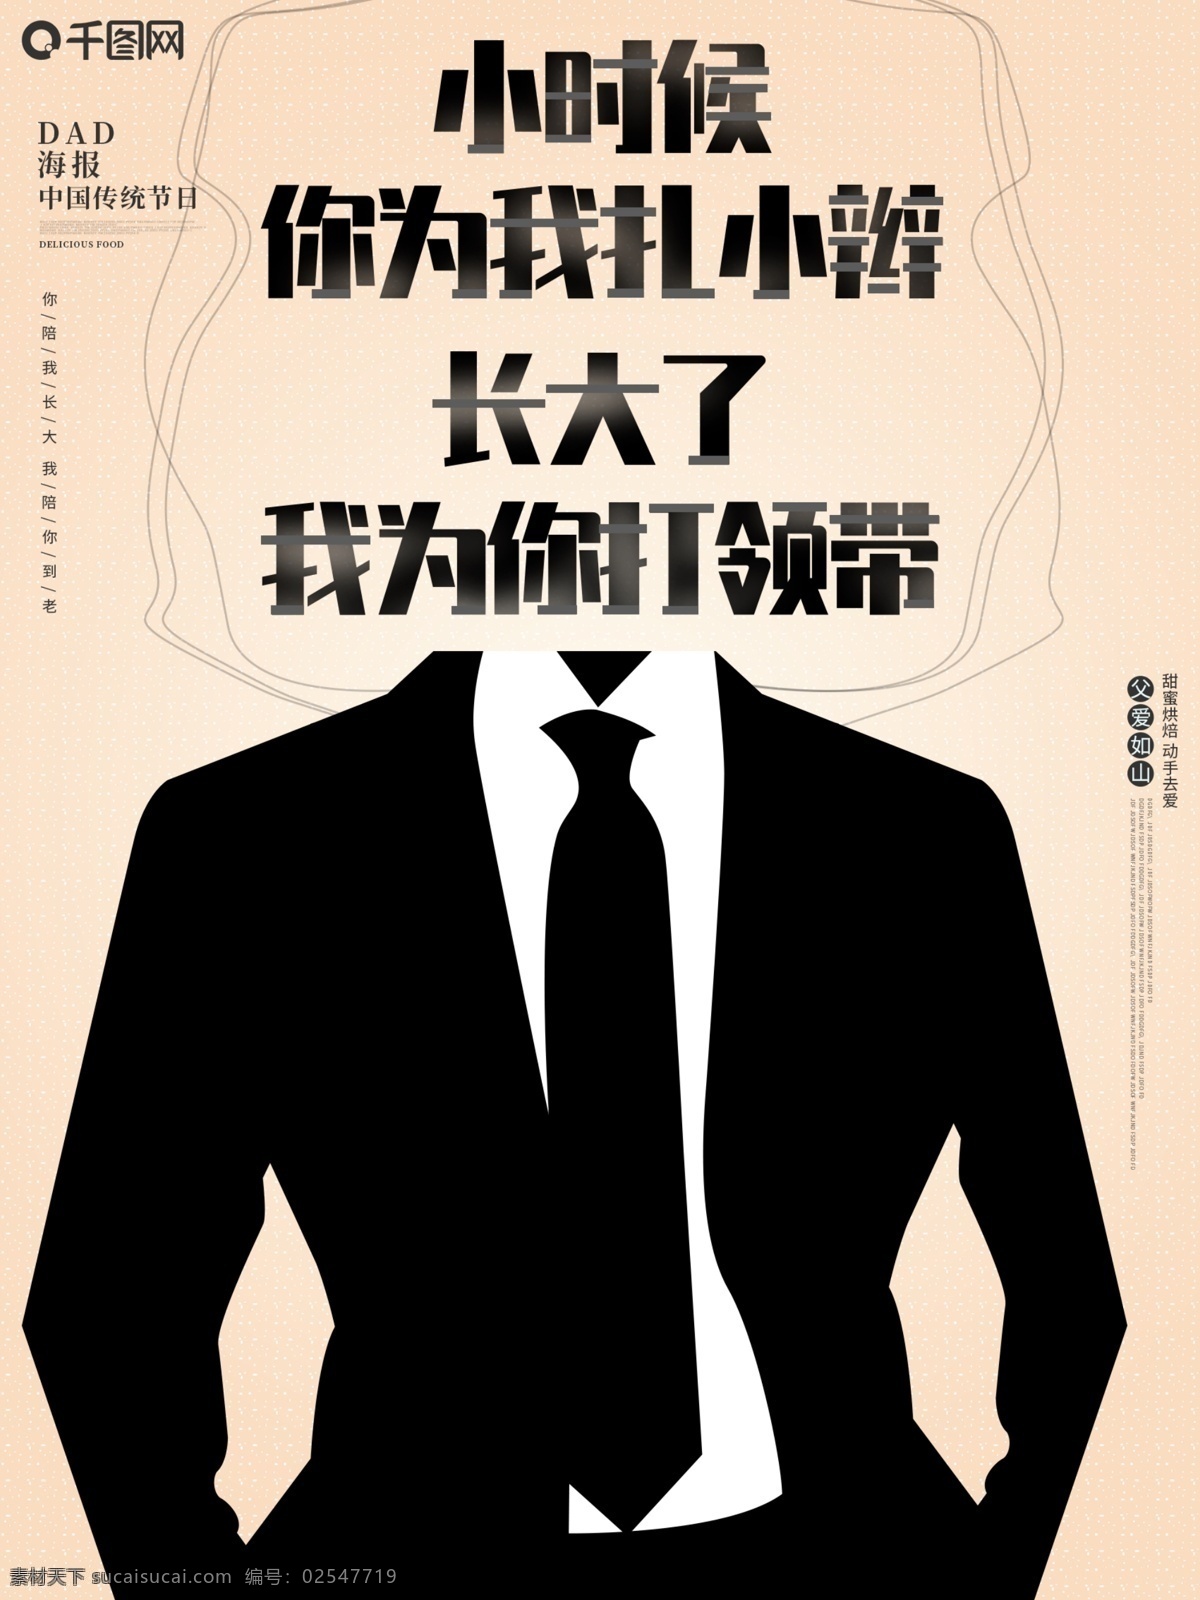 父亲节 文宣 原创 插画 大气 中国 传统节日 海报 促销 领带西装 中国传统节日